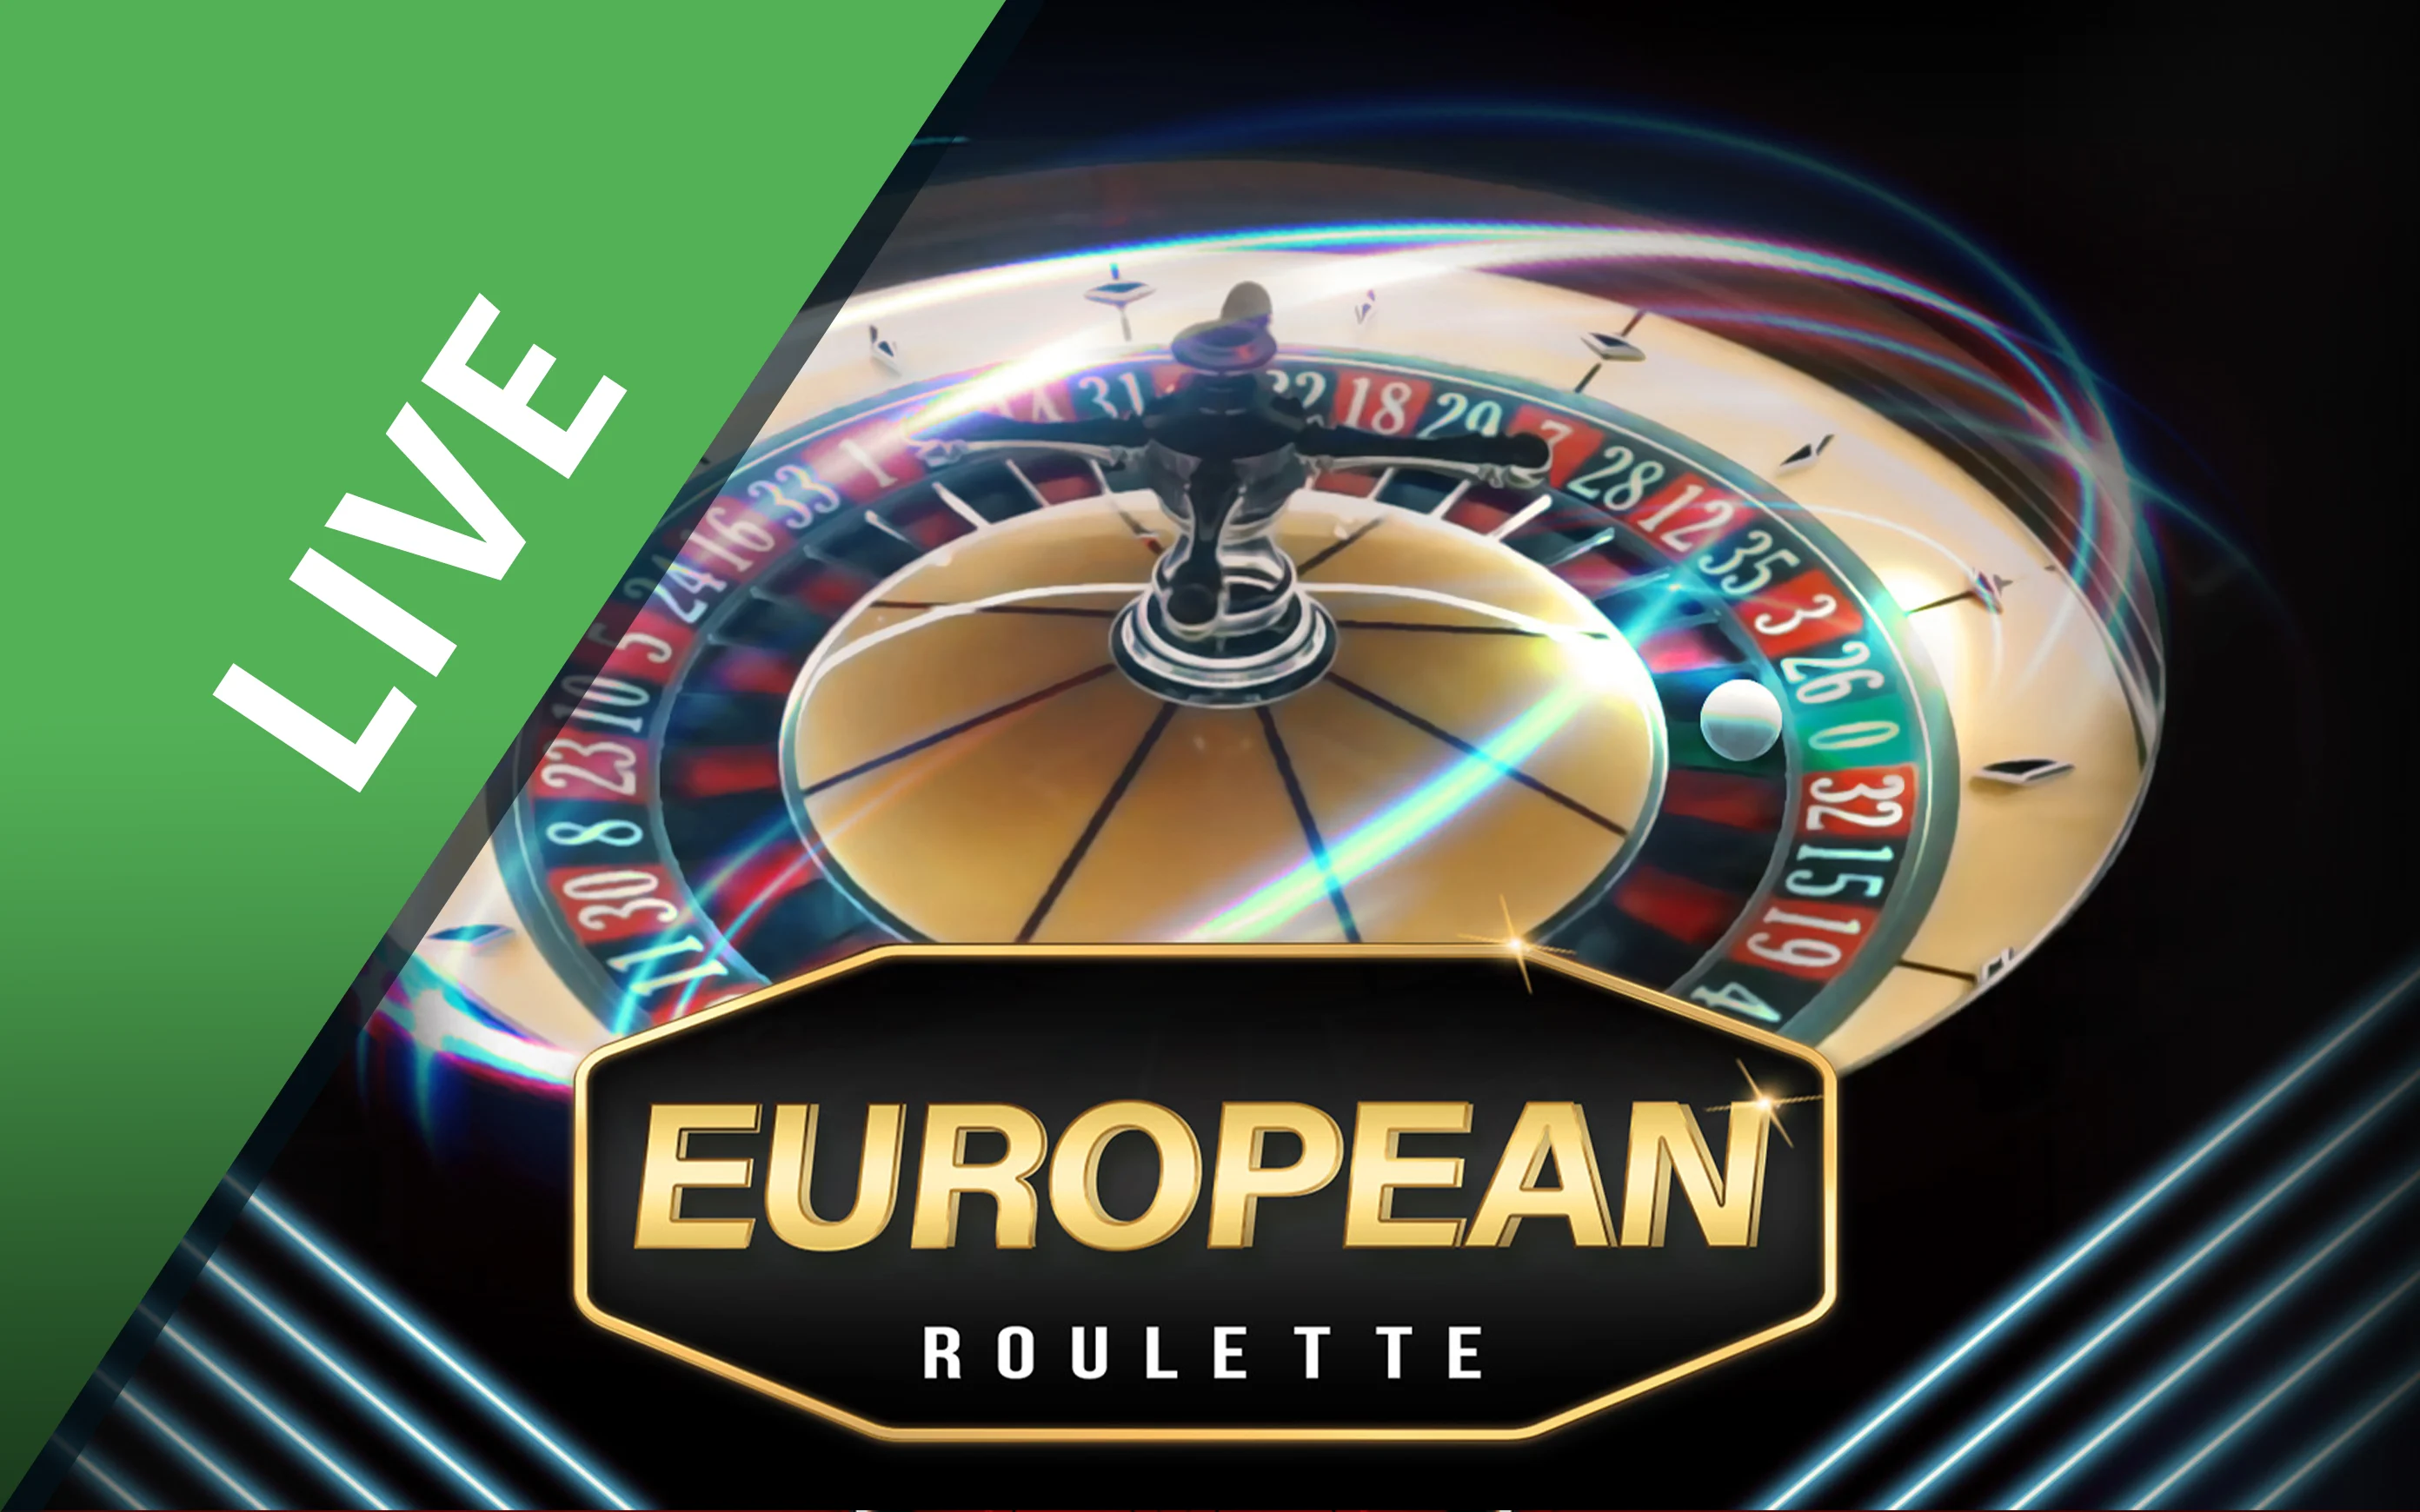 Speel European Roulette op Starcasino.be online casino